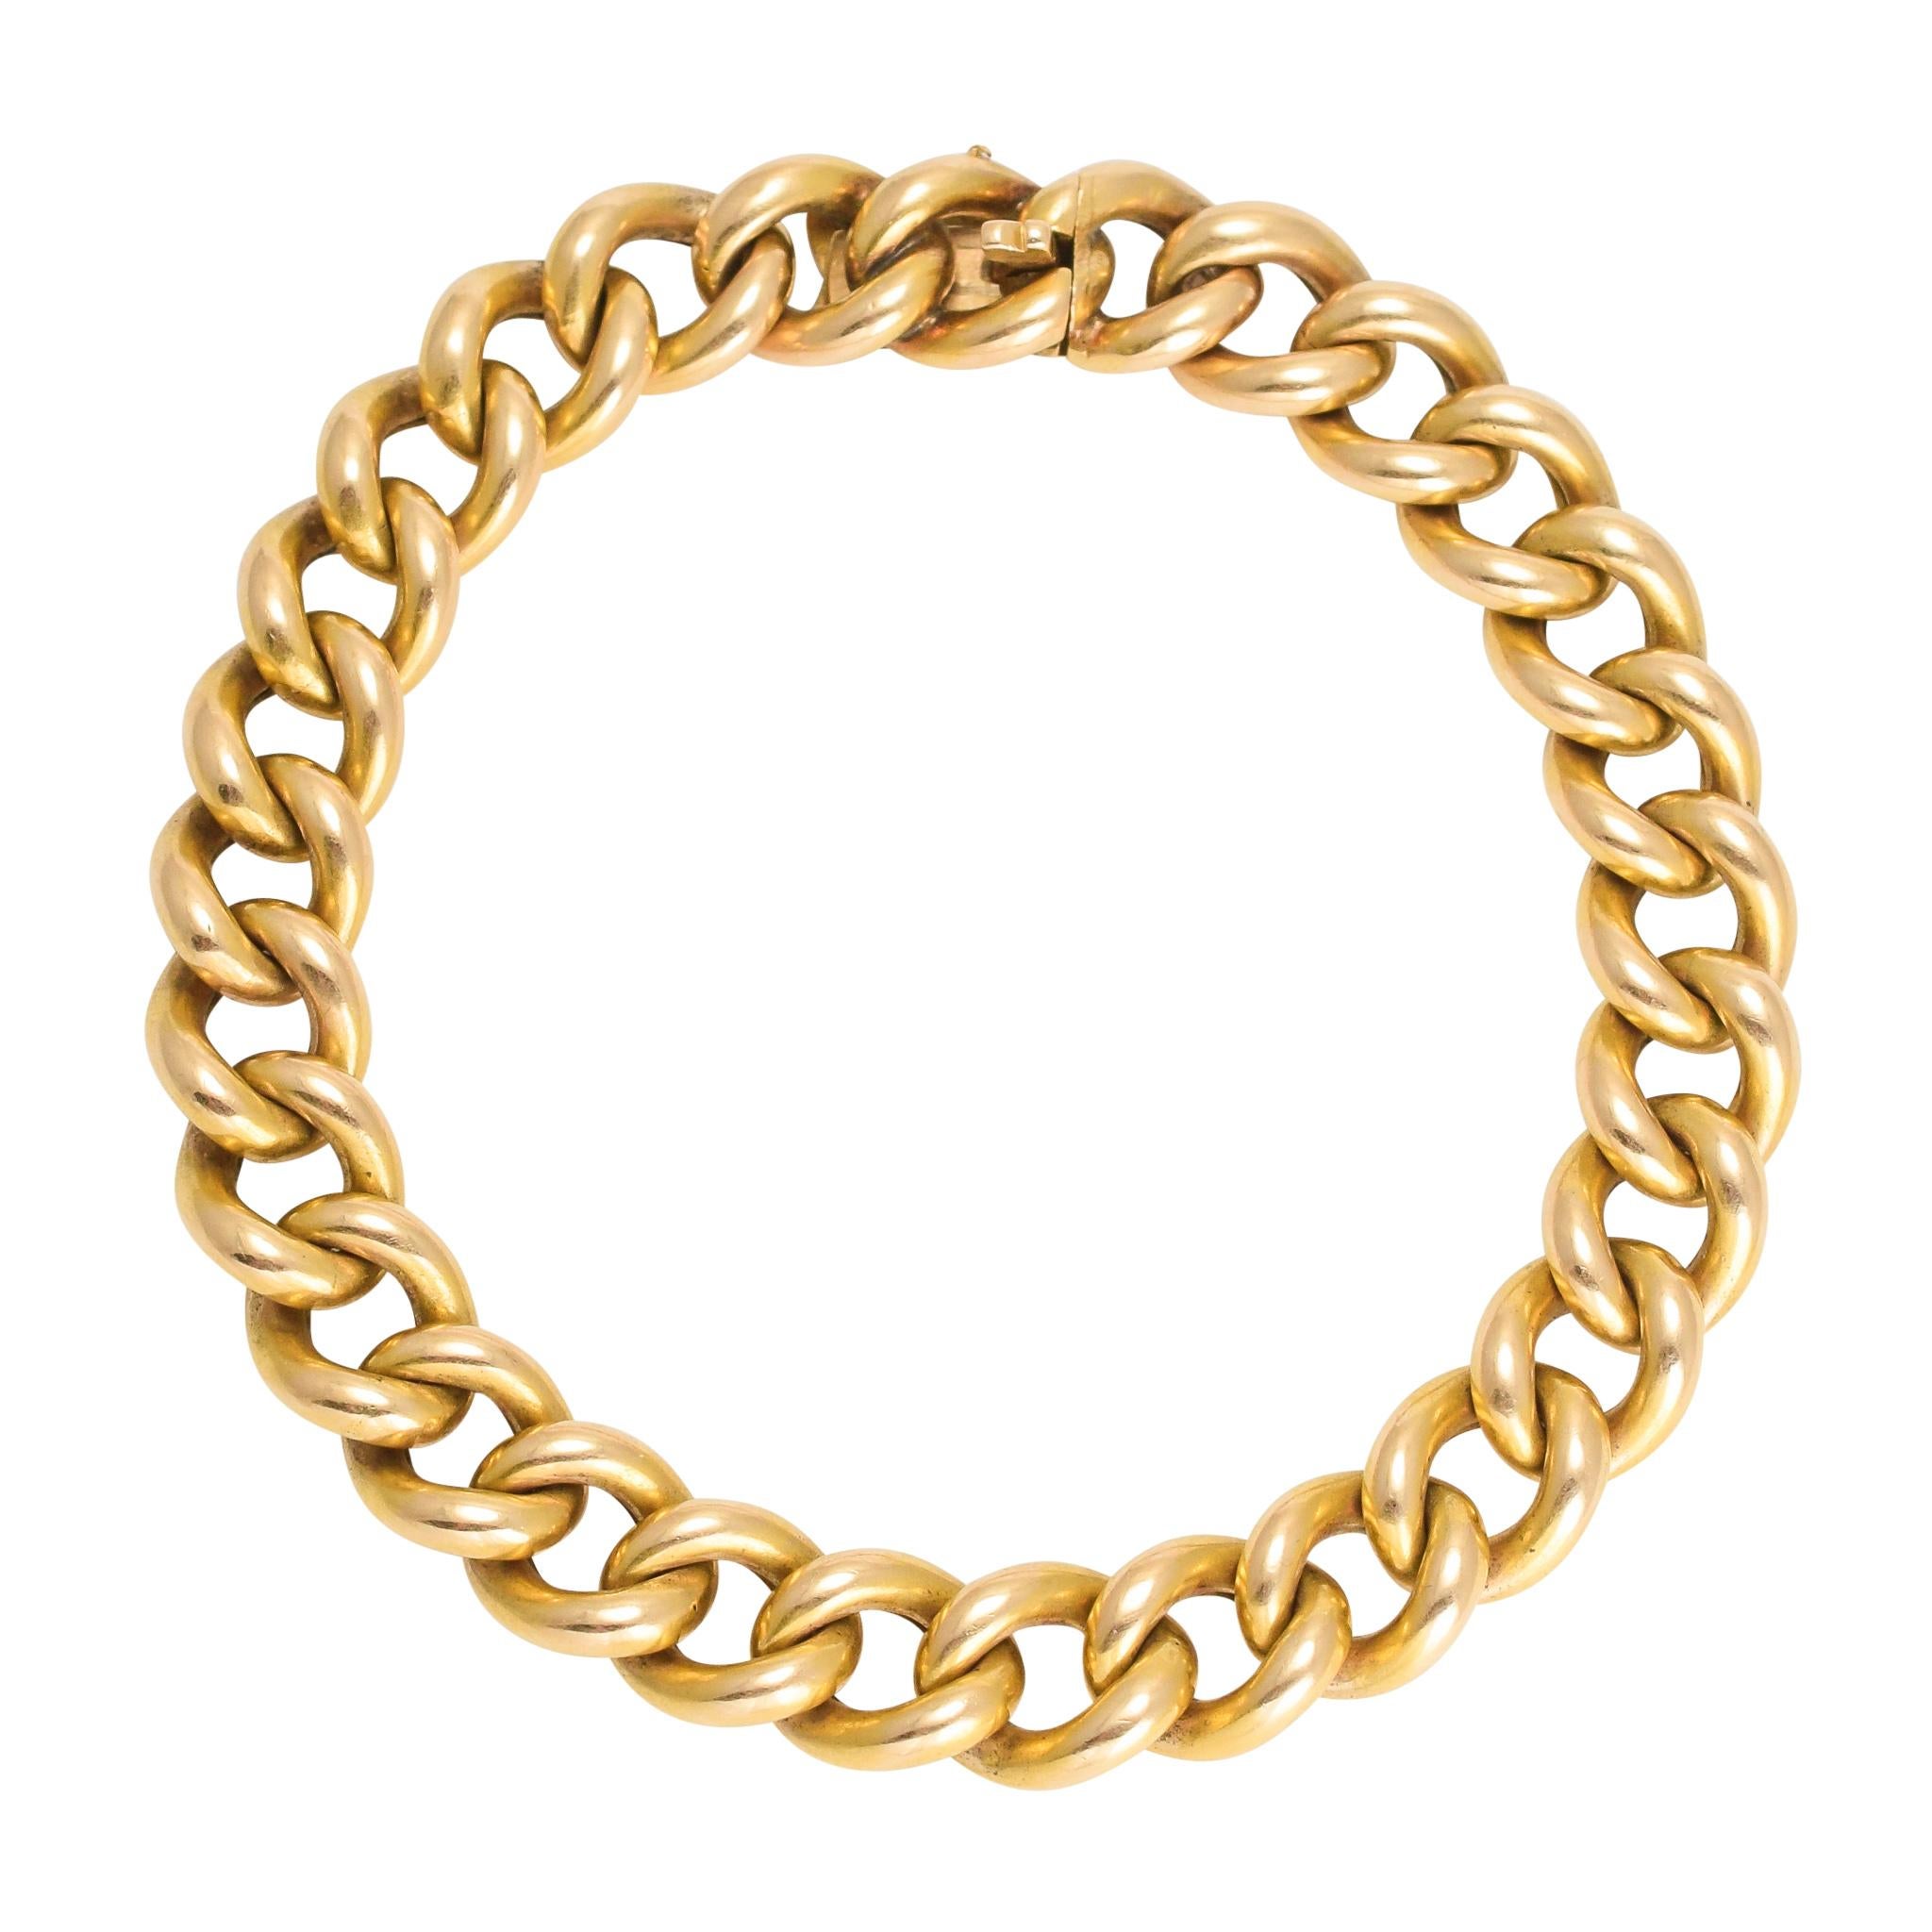 Antique Victorian 15 Karat Gold Curb-Link Bracelet